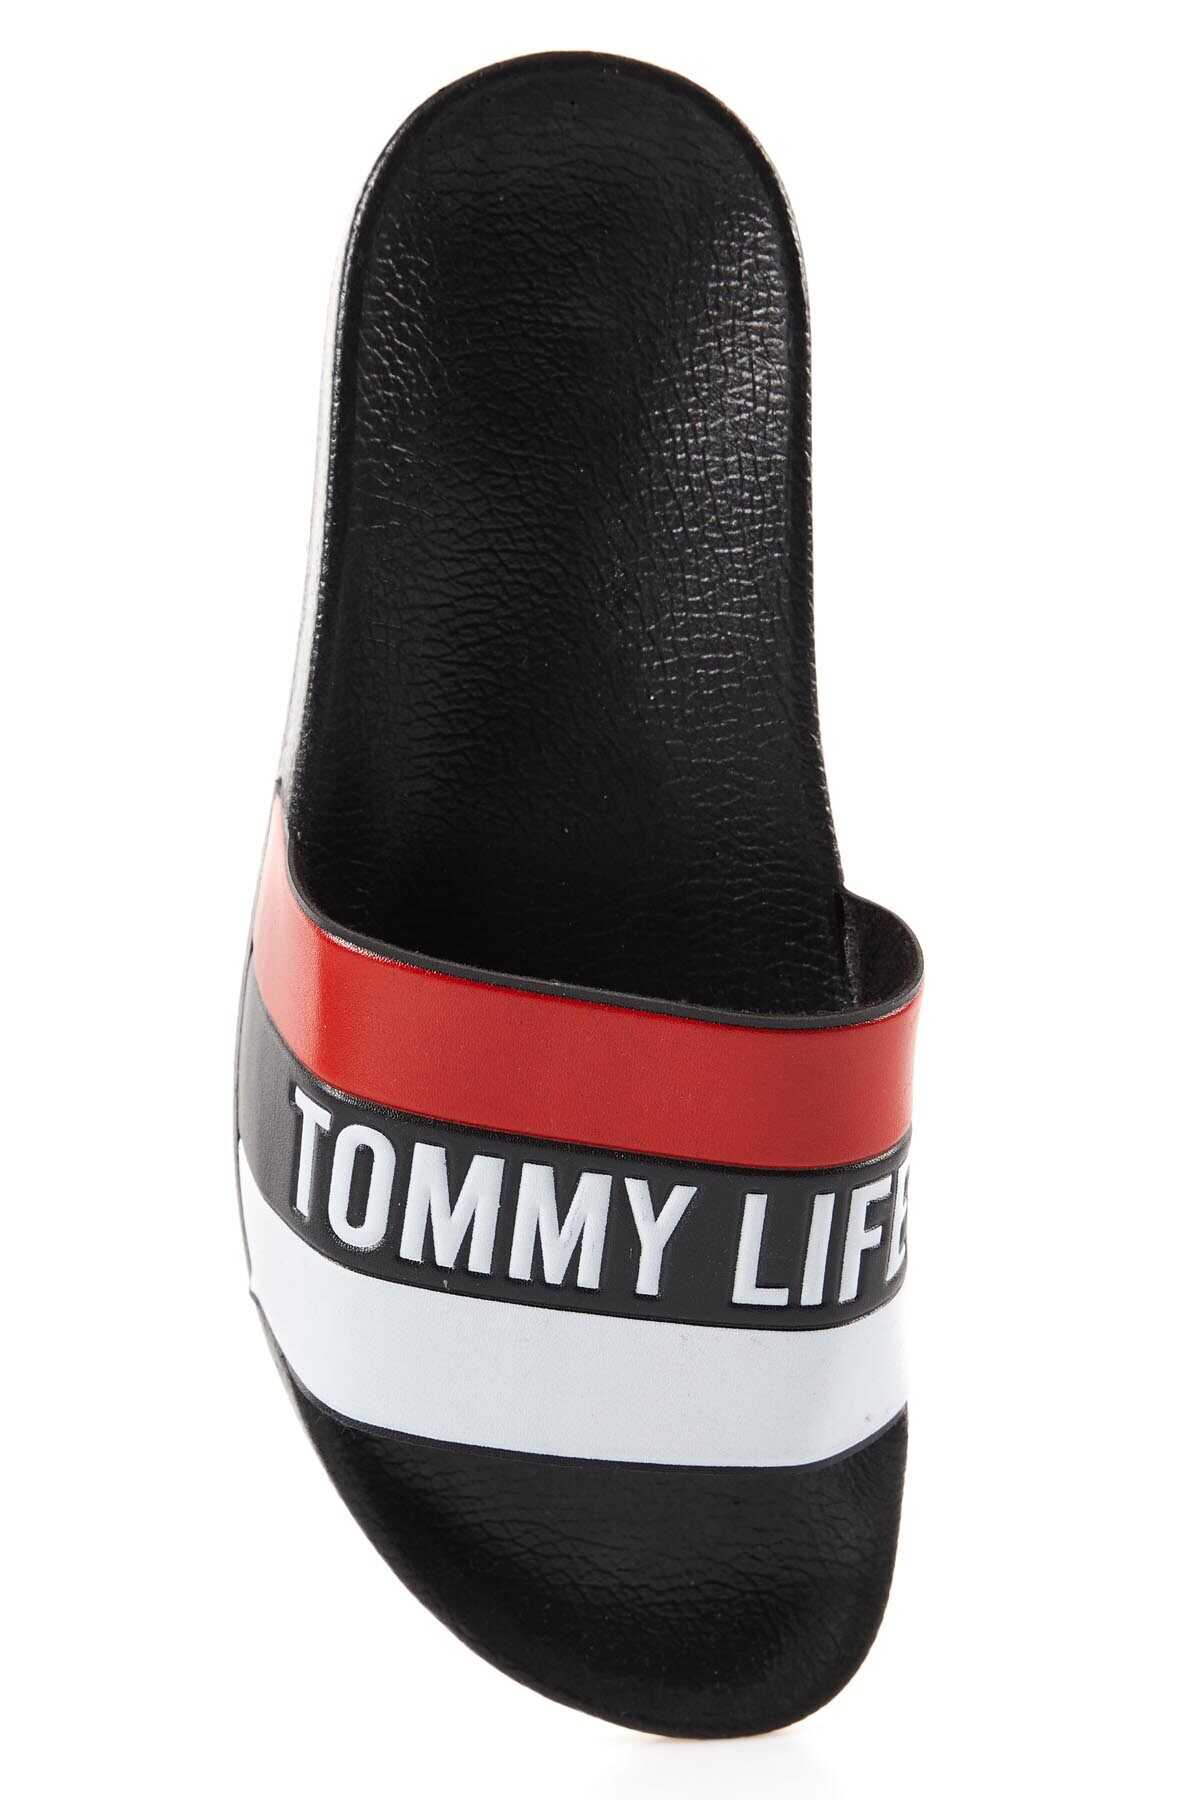 Tommylife Toptan Siyah Renkli Yazı Baskılı Erkek Terlik - 89085